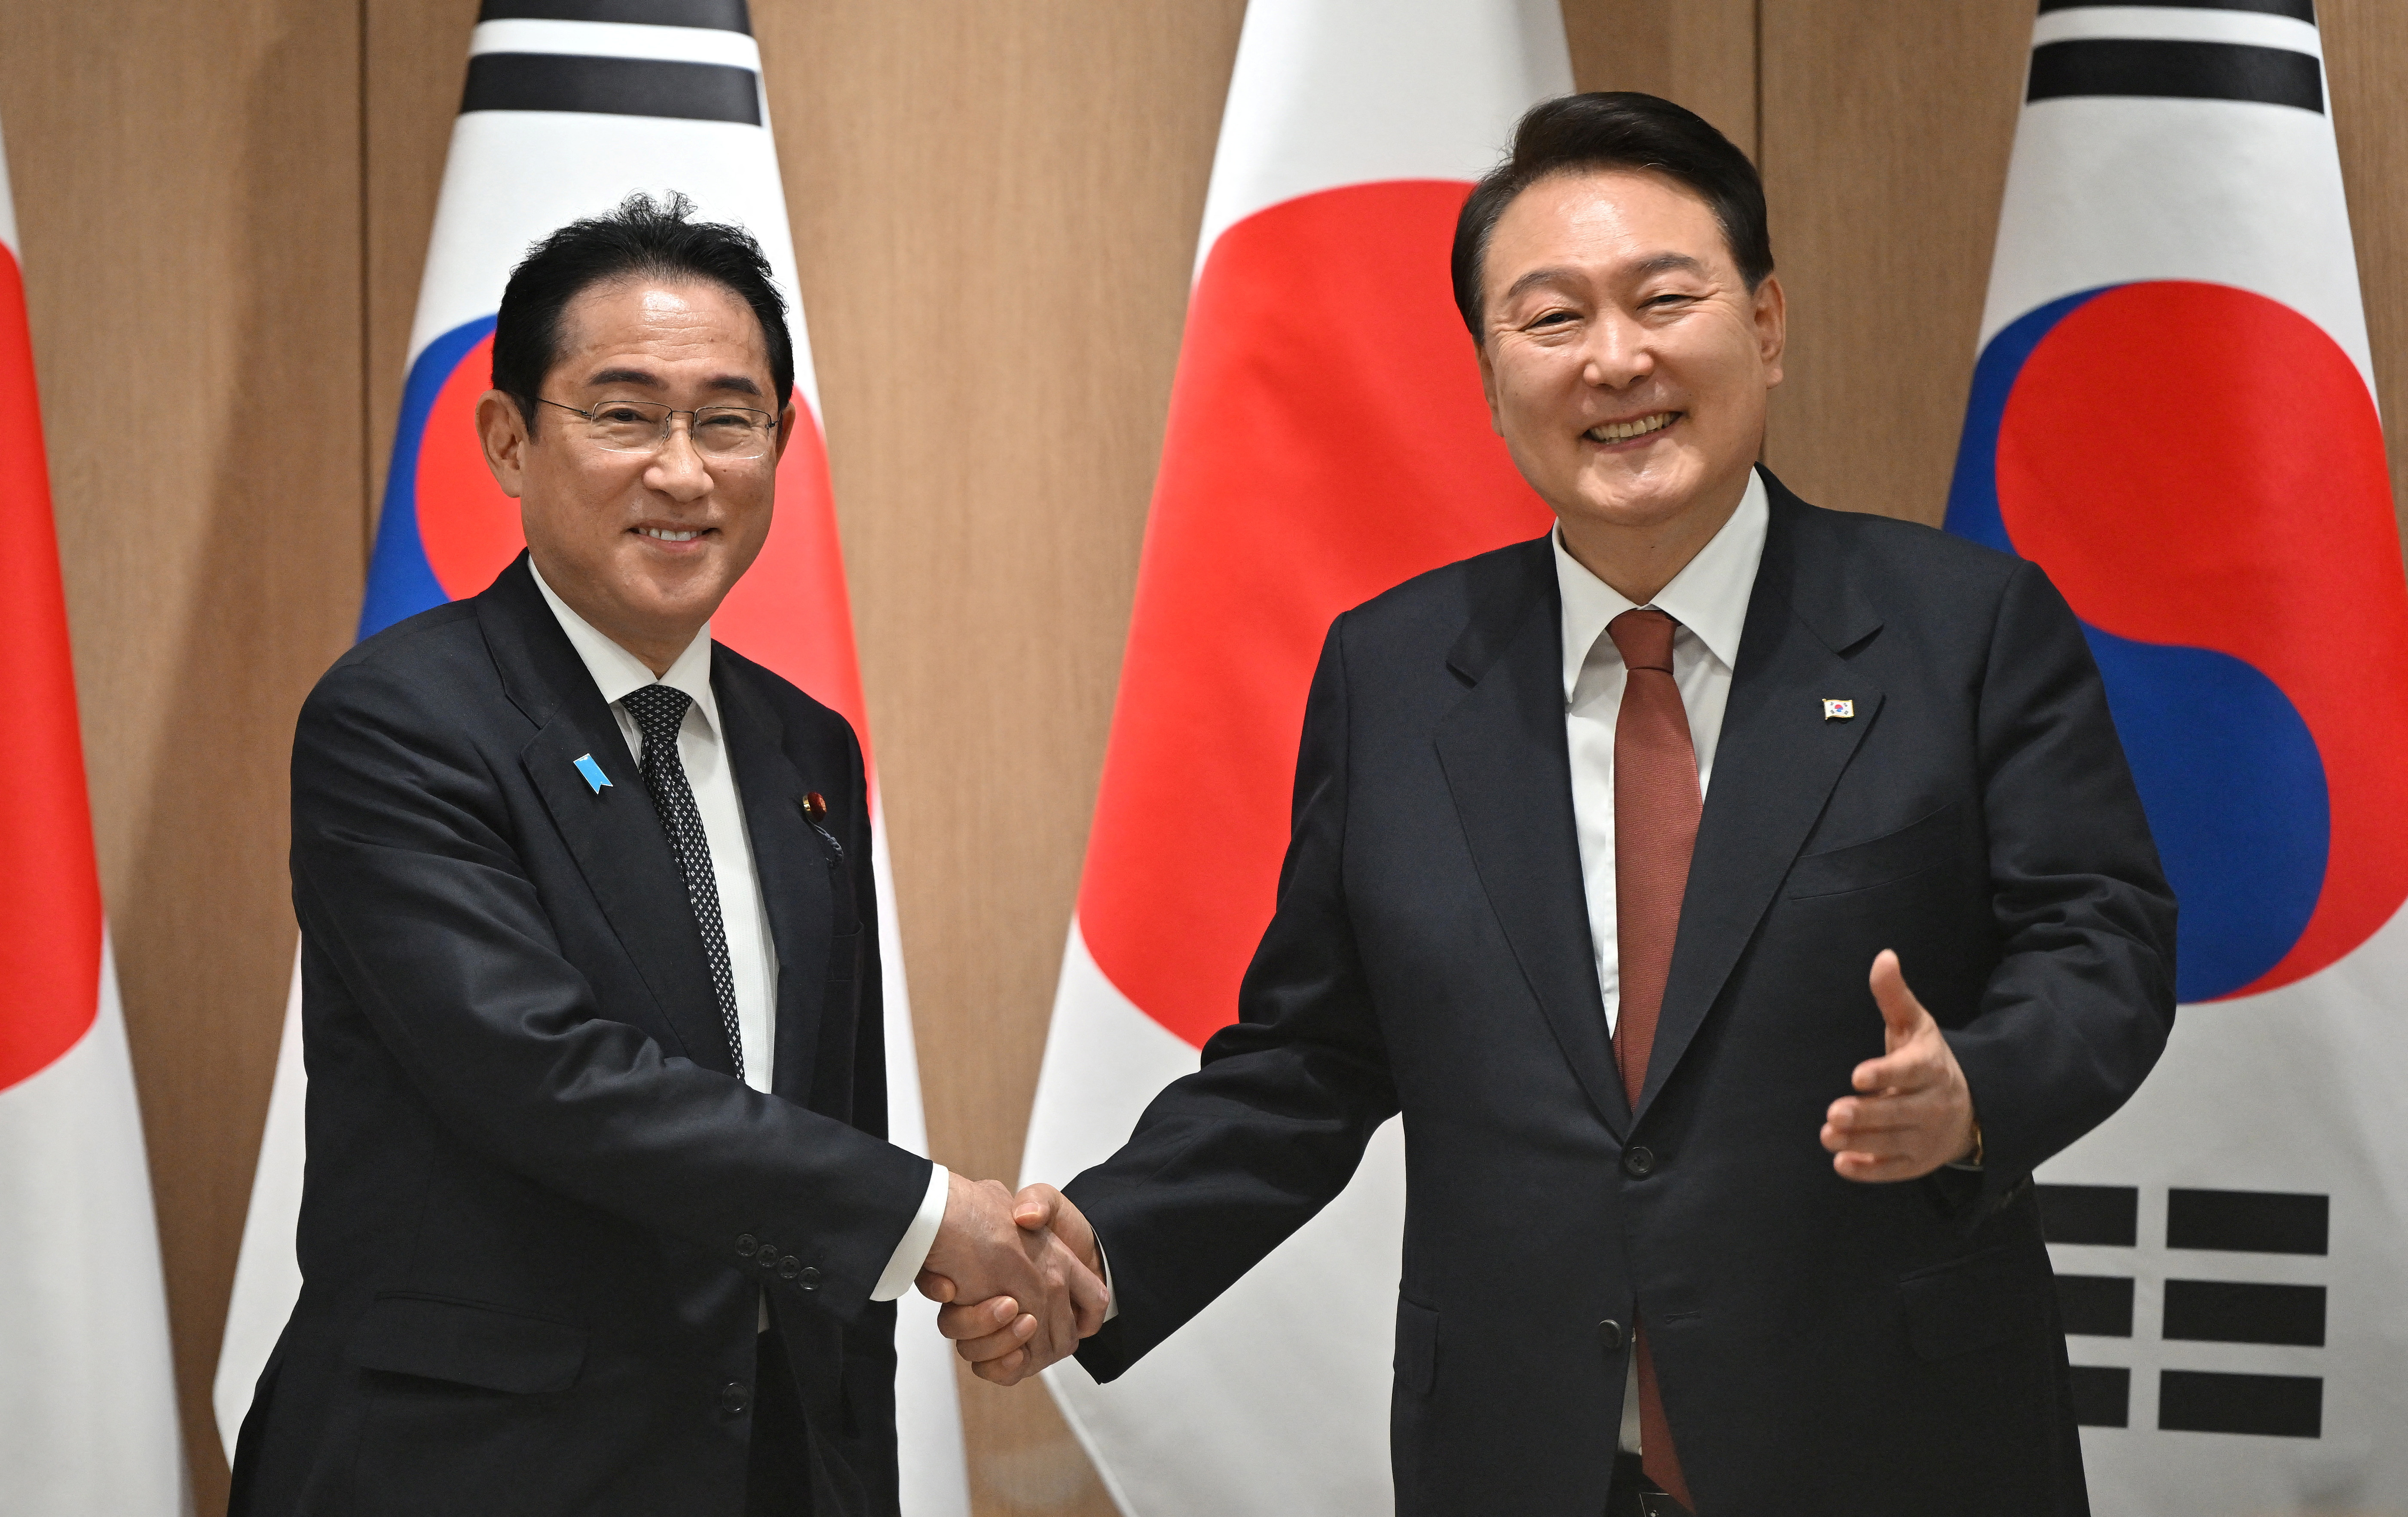 Los líderes de Corea del Sur y Japón comenzaron su primera cumbre formal en Seúl tras una década